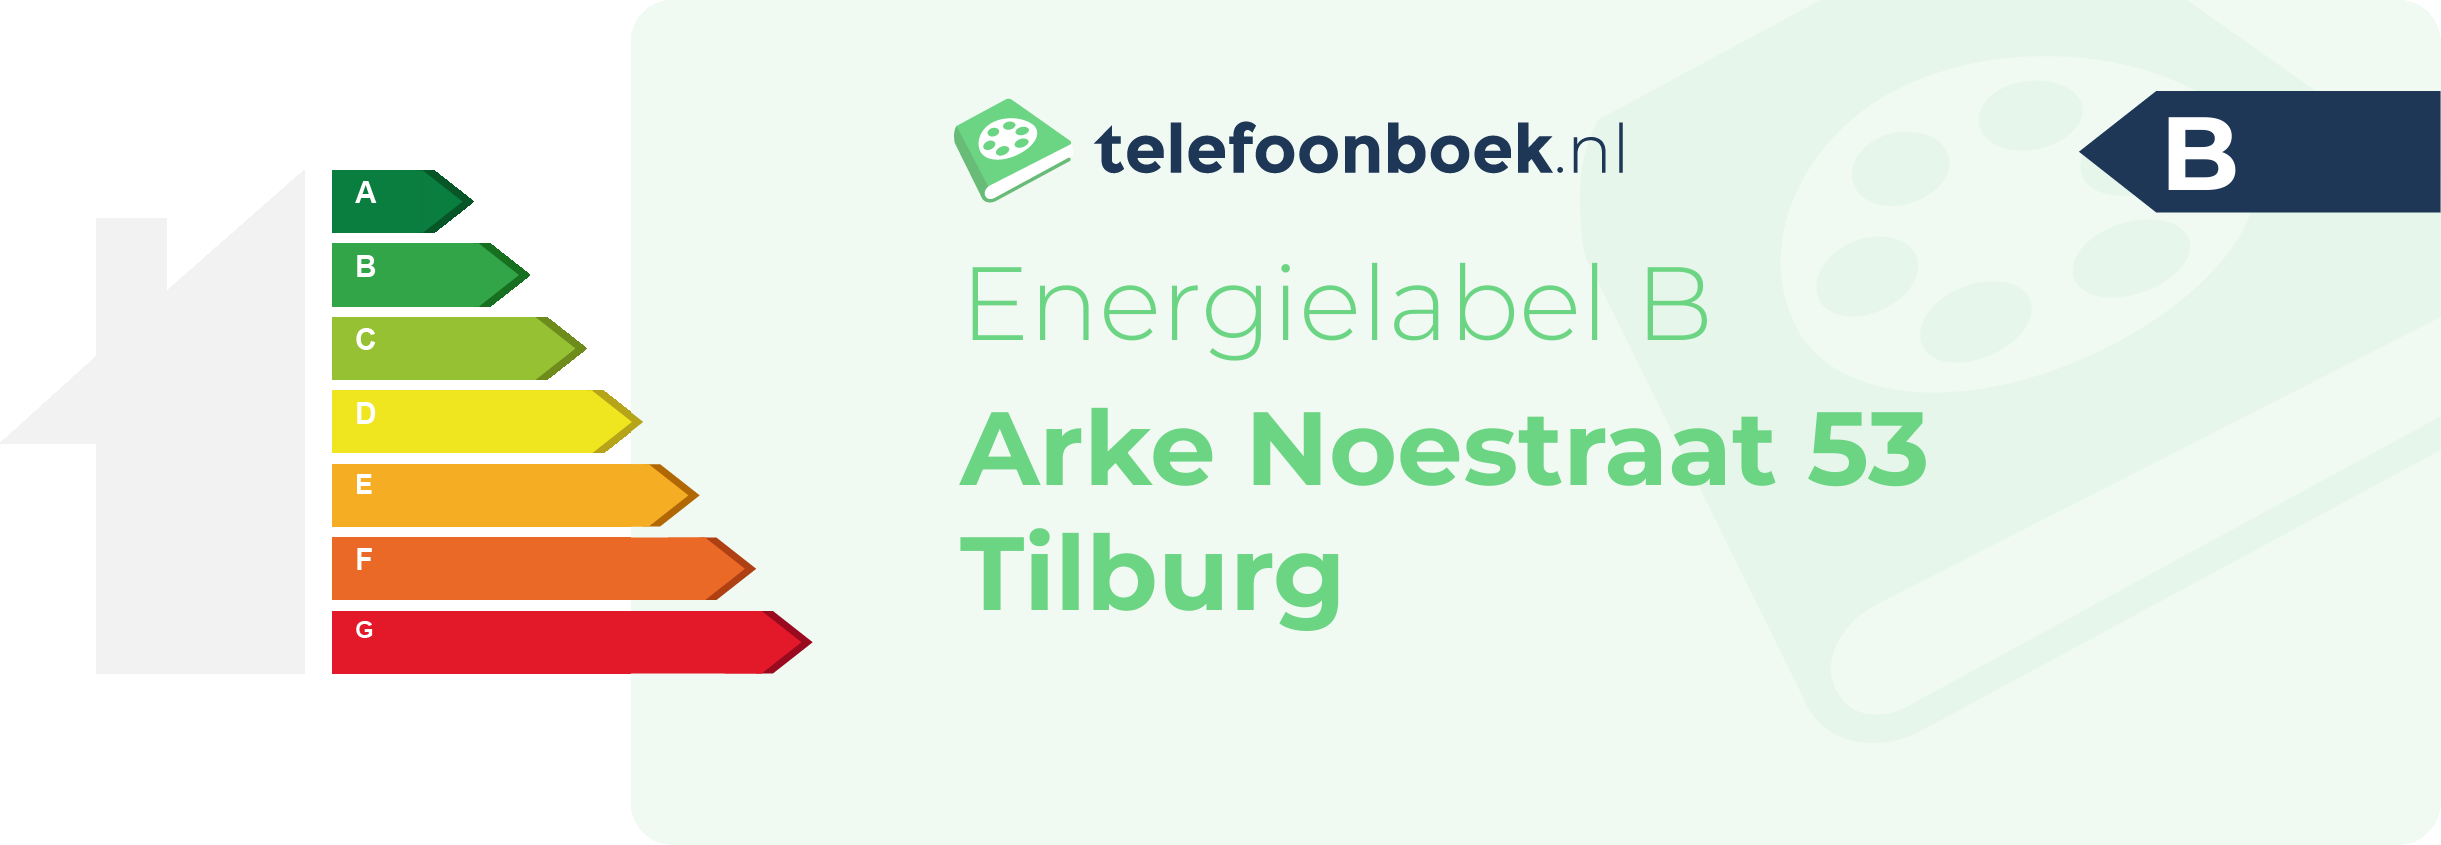 Energielabel Arke Noestraat 53 Tilburg